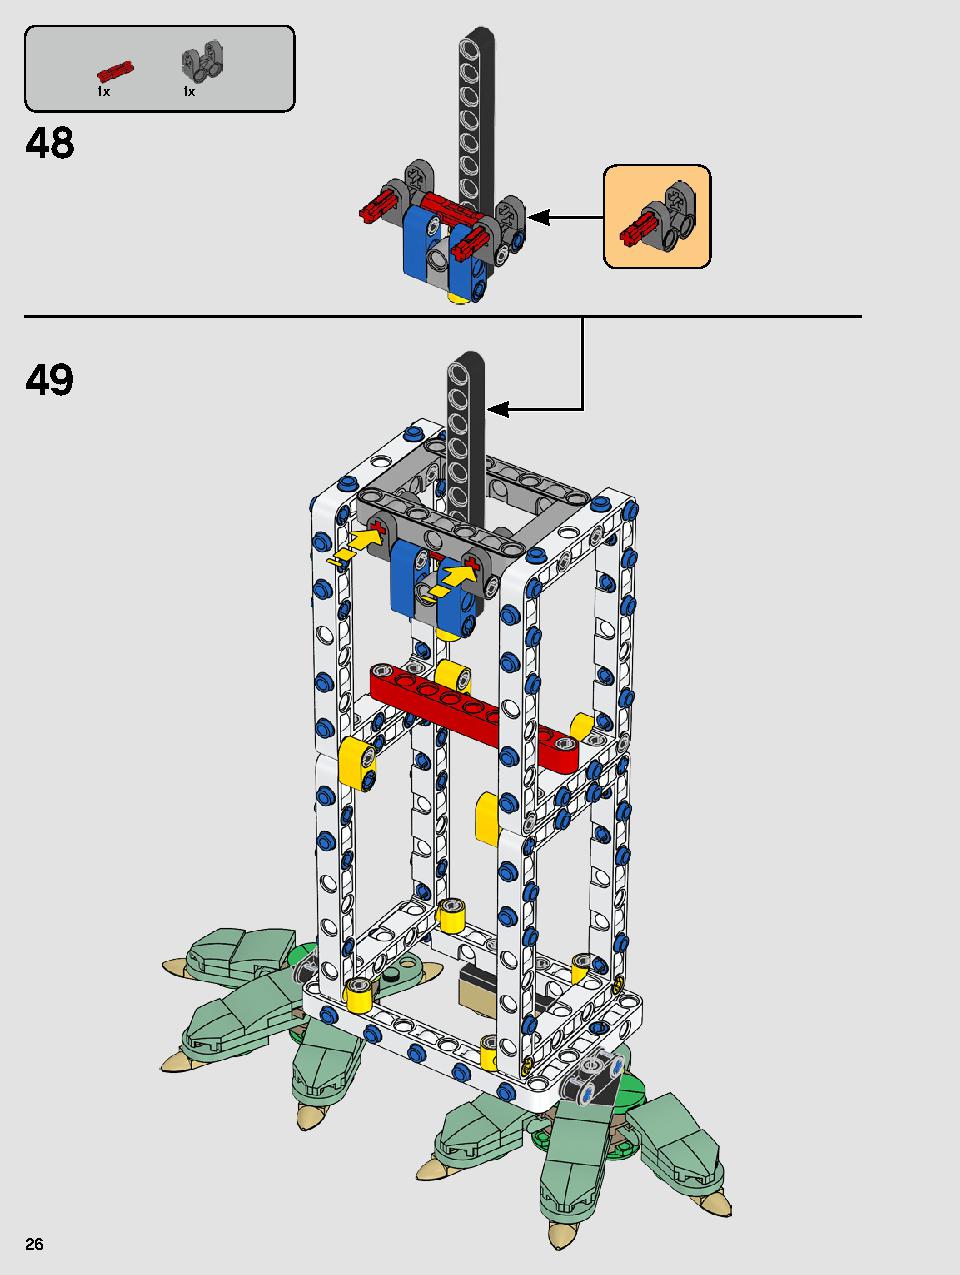 ヨーダ™ 75255 レゴの商品情報 レゴの説明書・組立方法 26 page